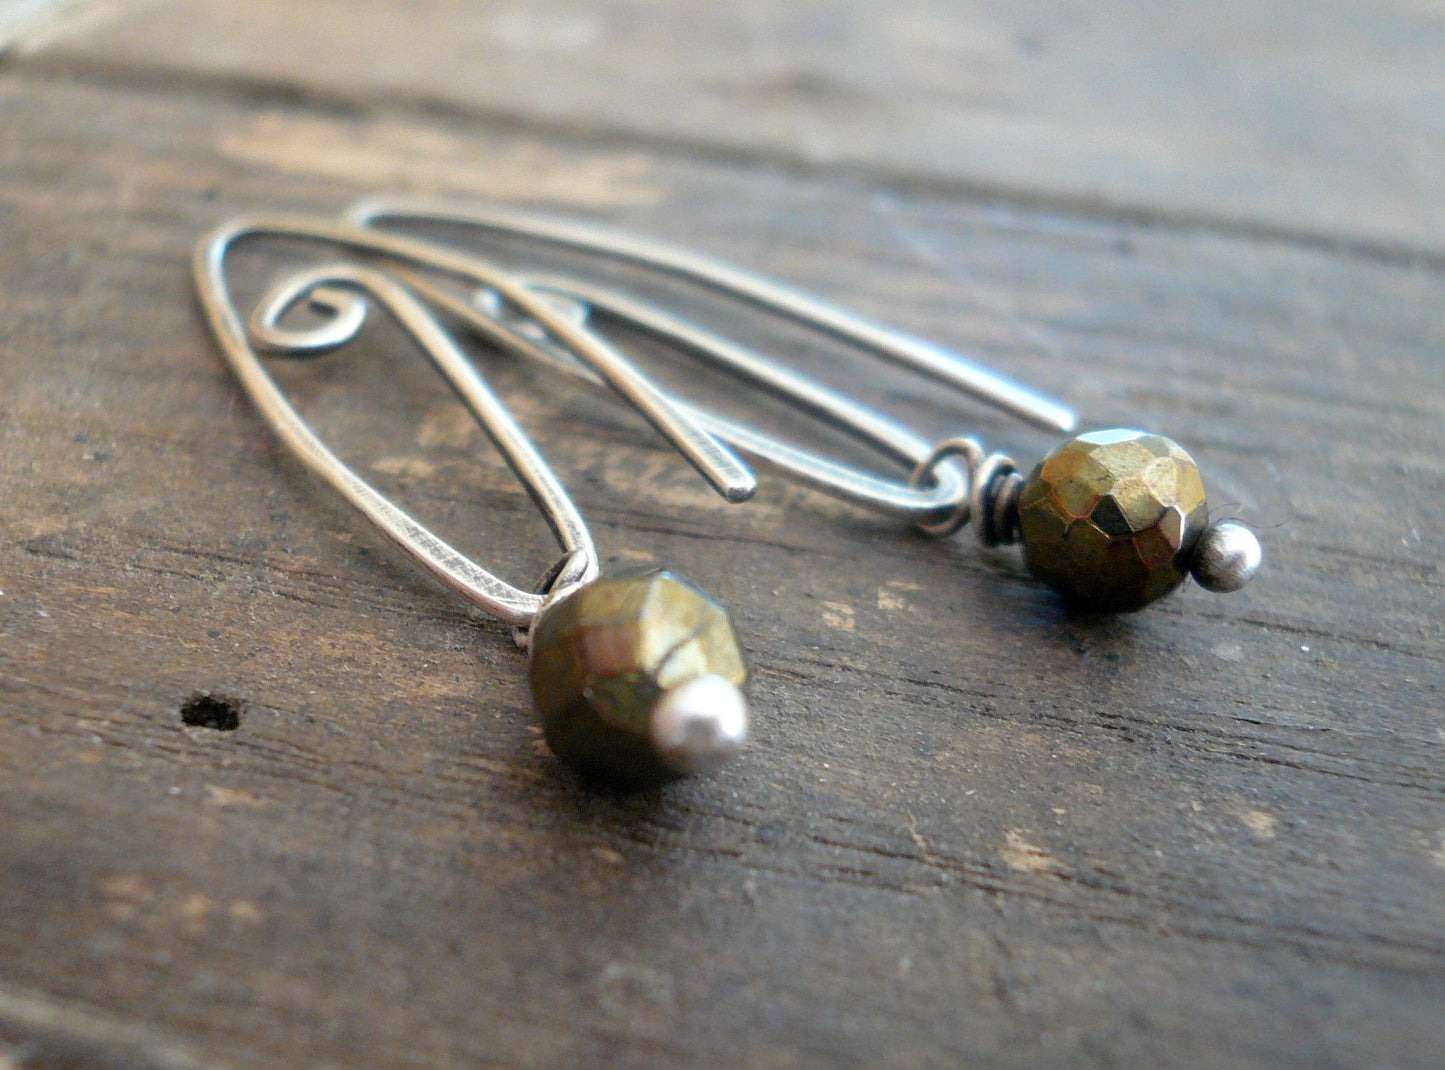 Tittle - Handmade Earrings. Pyrite, Oxidized Sterling Silver Dangle Earrings